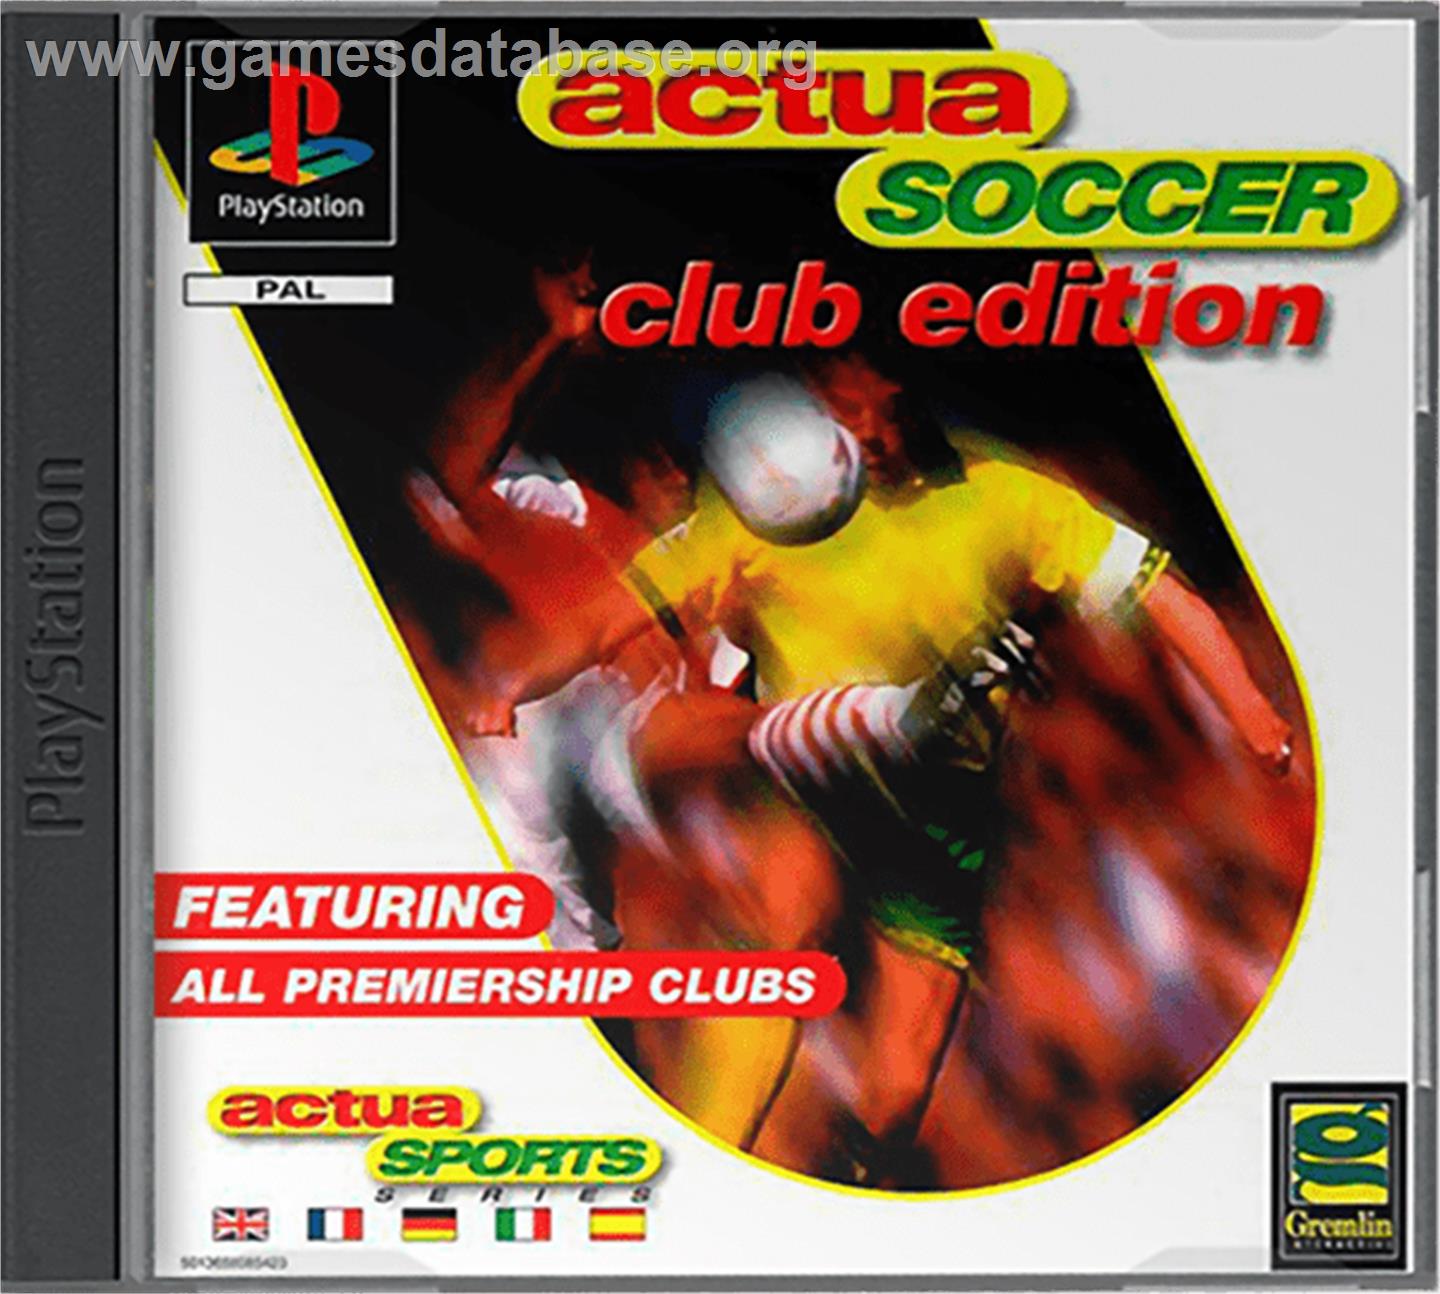 Actua Soccer: Club Edition - Sony Playstation - Artwork - Box